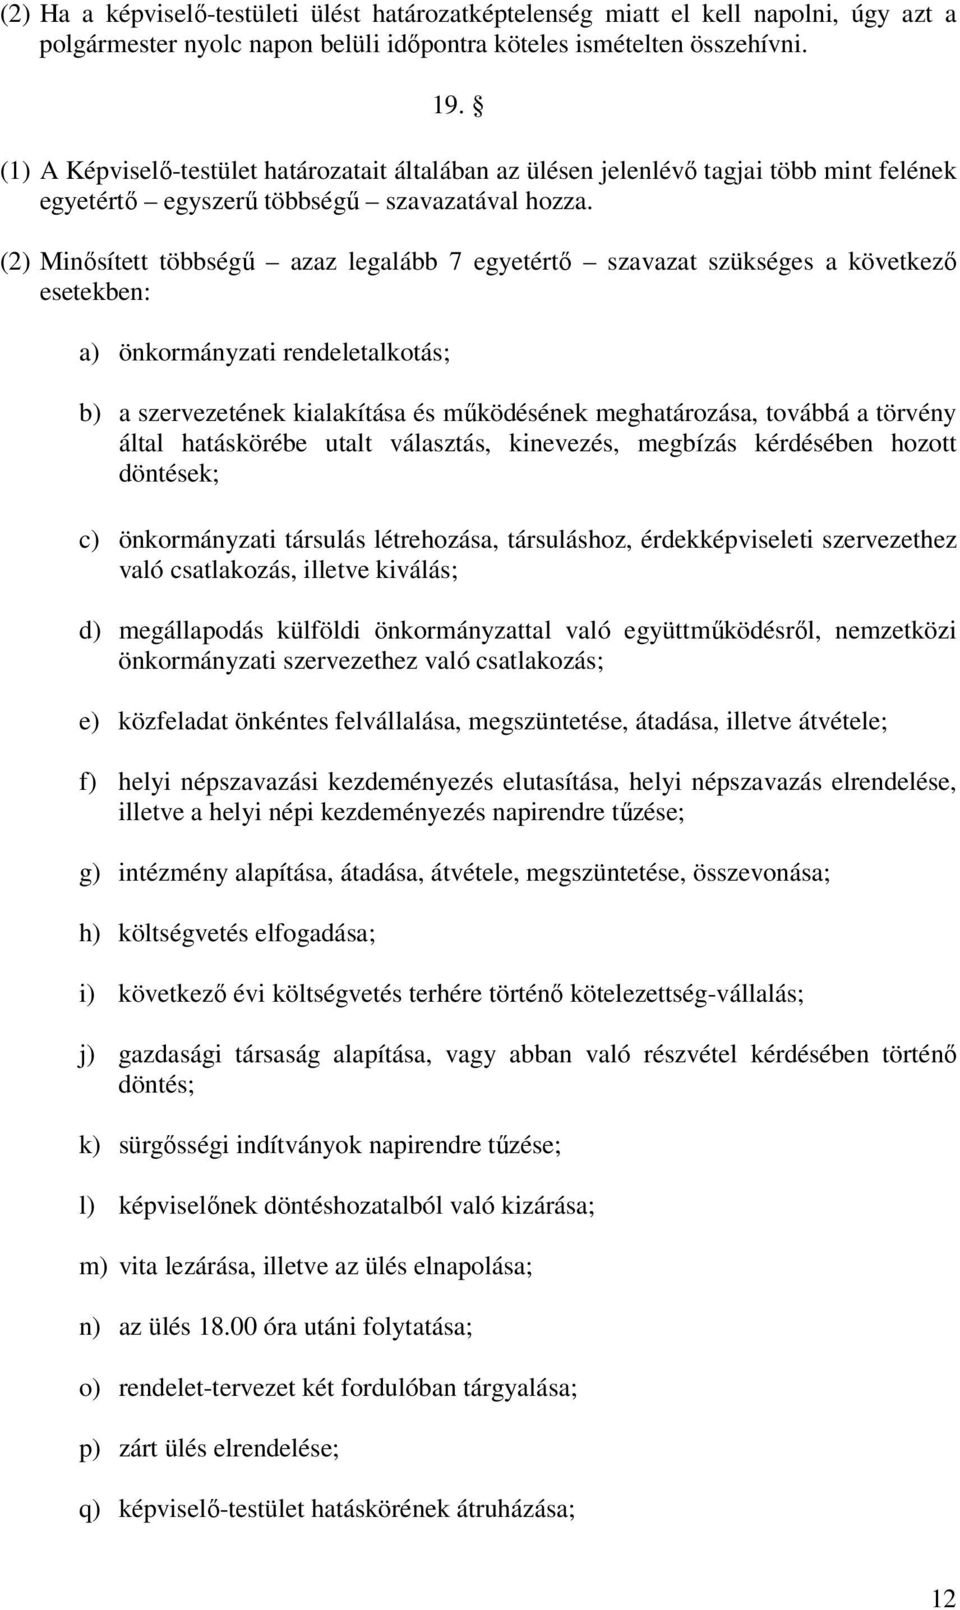 (2) Minısített többségő azaz legalább 7 egyetértı szavazat szükséges a következı esetekben: a) önkormányzati rendeletalkotás; b) a szervezetének kialakítása és mőködésének meghatározása, továbbá a